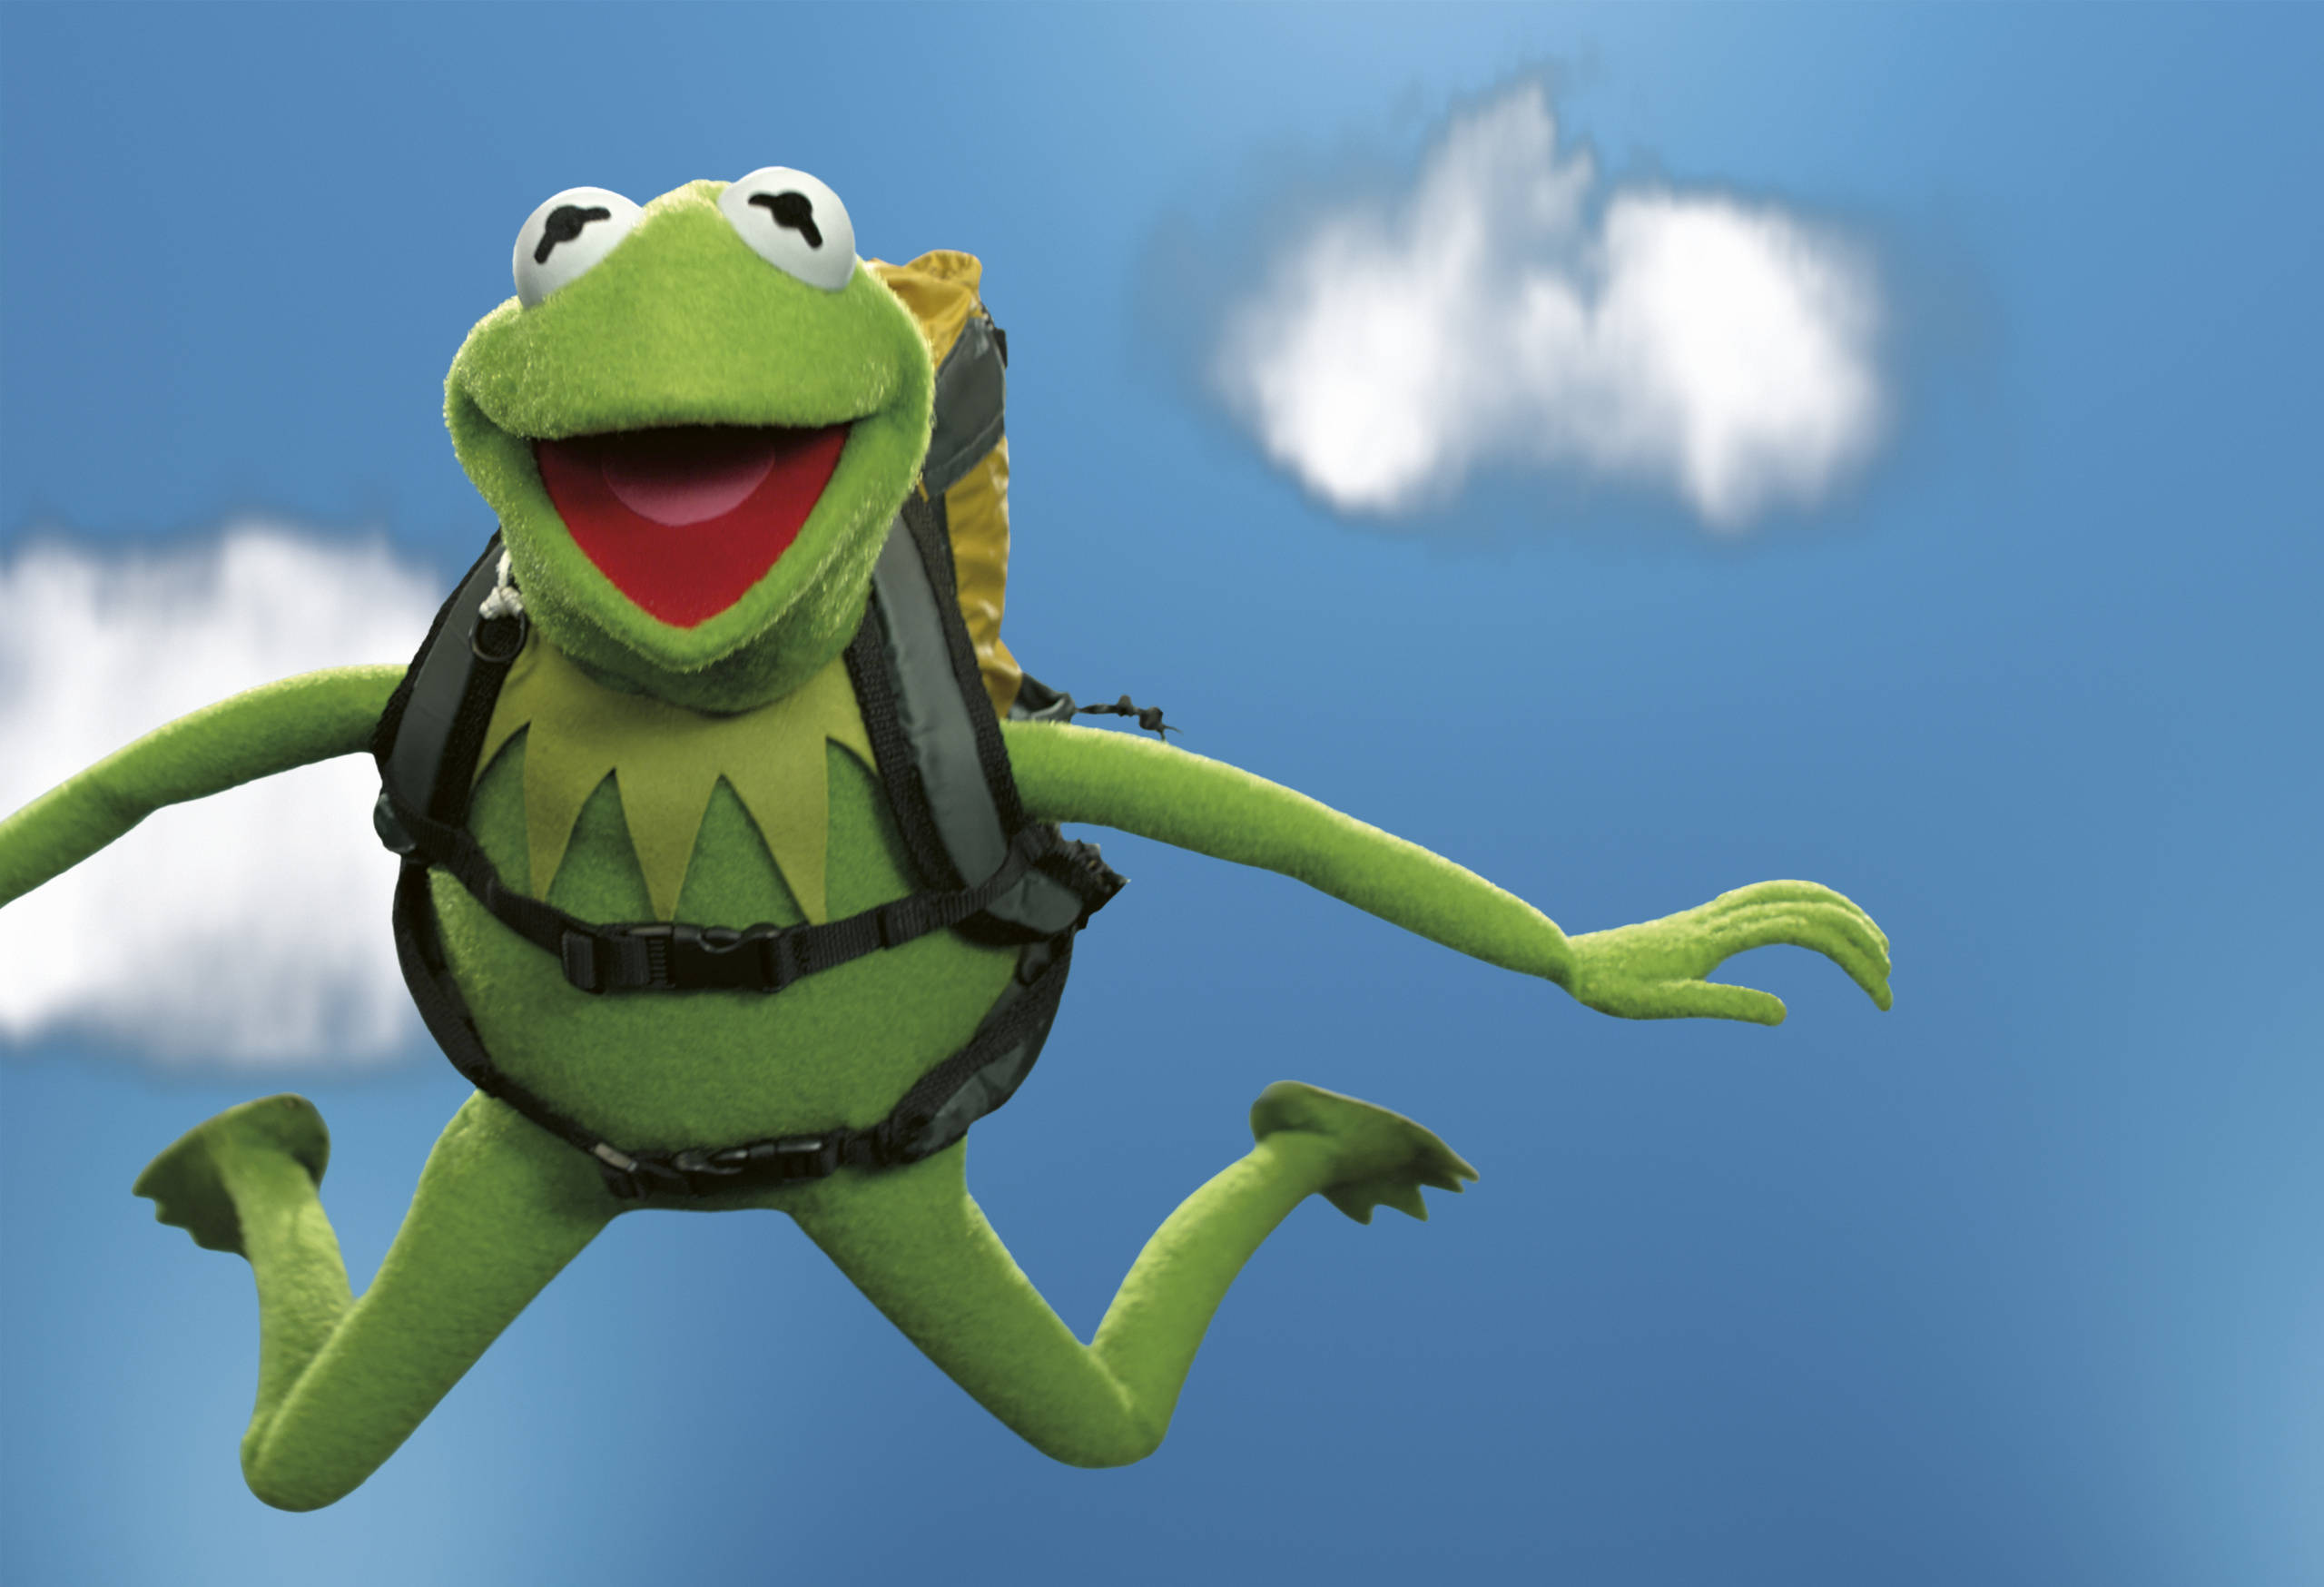 于是,我们选择与地球上最单纯的人合作:kermit the frog,这位科米蛙是